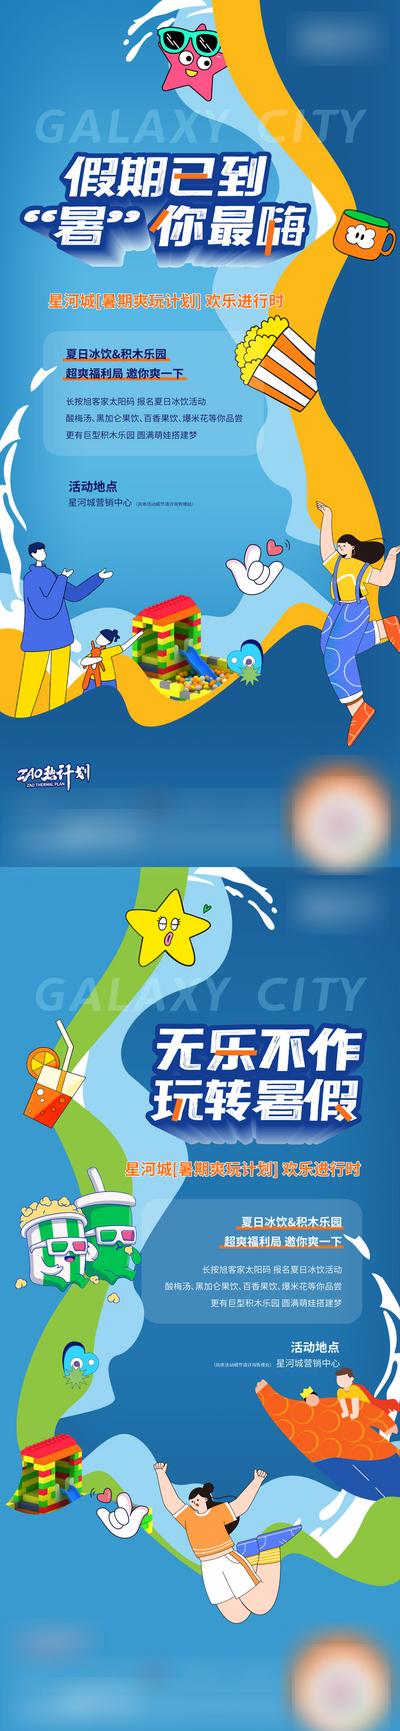 南门网 广告 海报 地产 亲子 暑假 欢乐 水世界 DIY 冰饮 活动 系列 插画 积木 酸梅汤